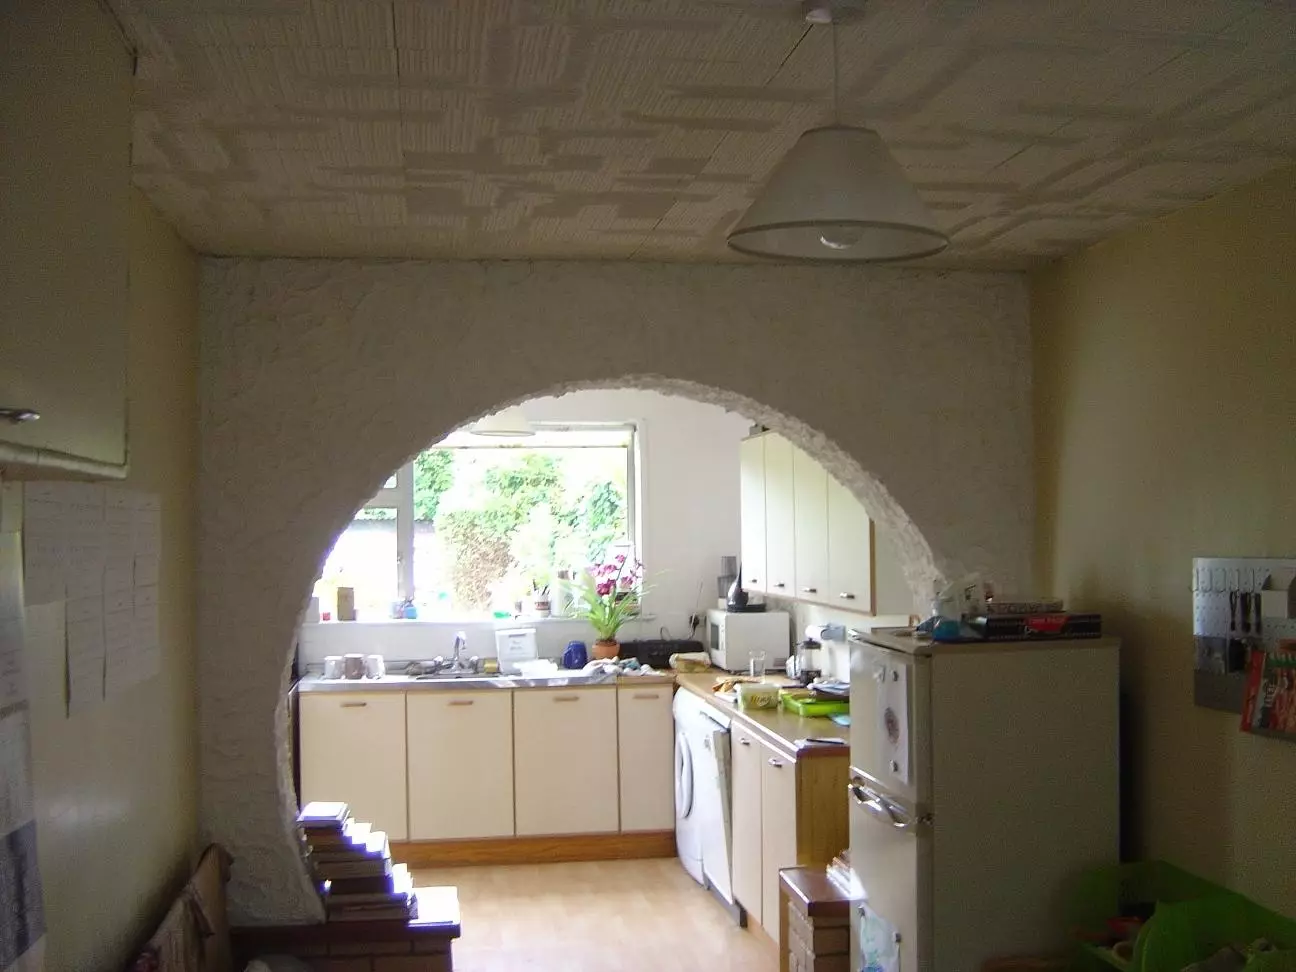 Kuchyně v domácnosti (46 fotek): kuchyňský design 6m². Metry a opravy jiných malých kuchyních, plánování nápadů 9482_22